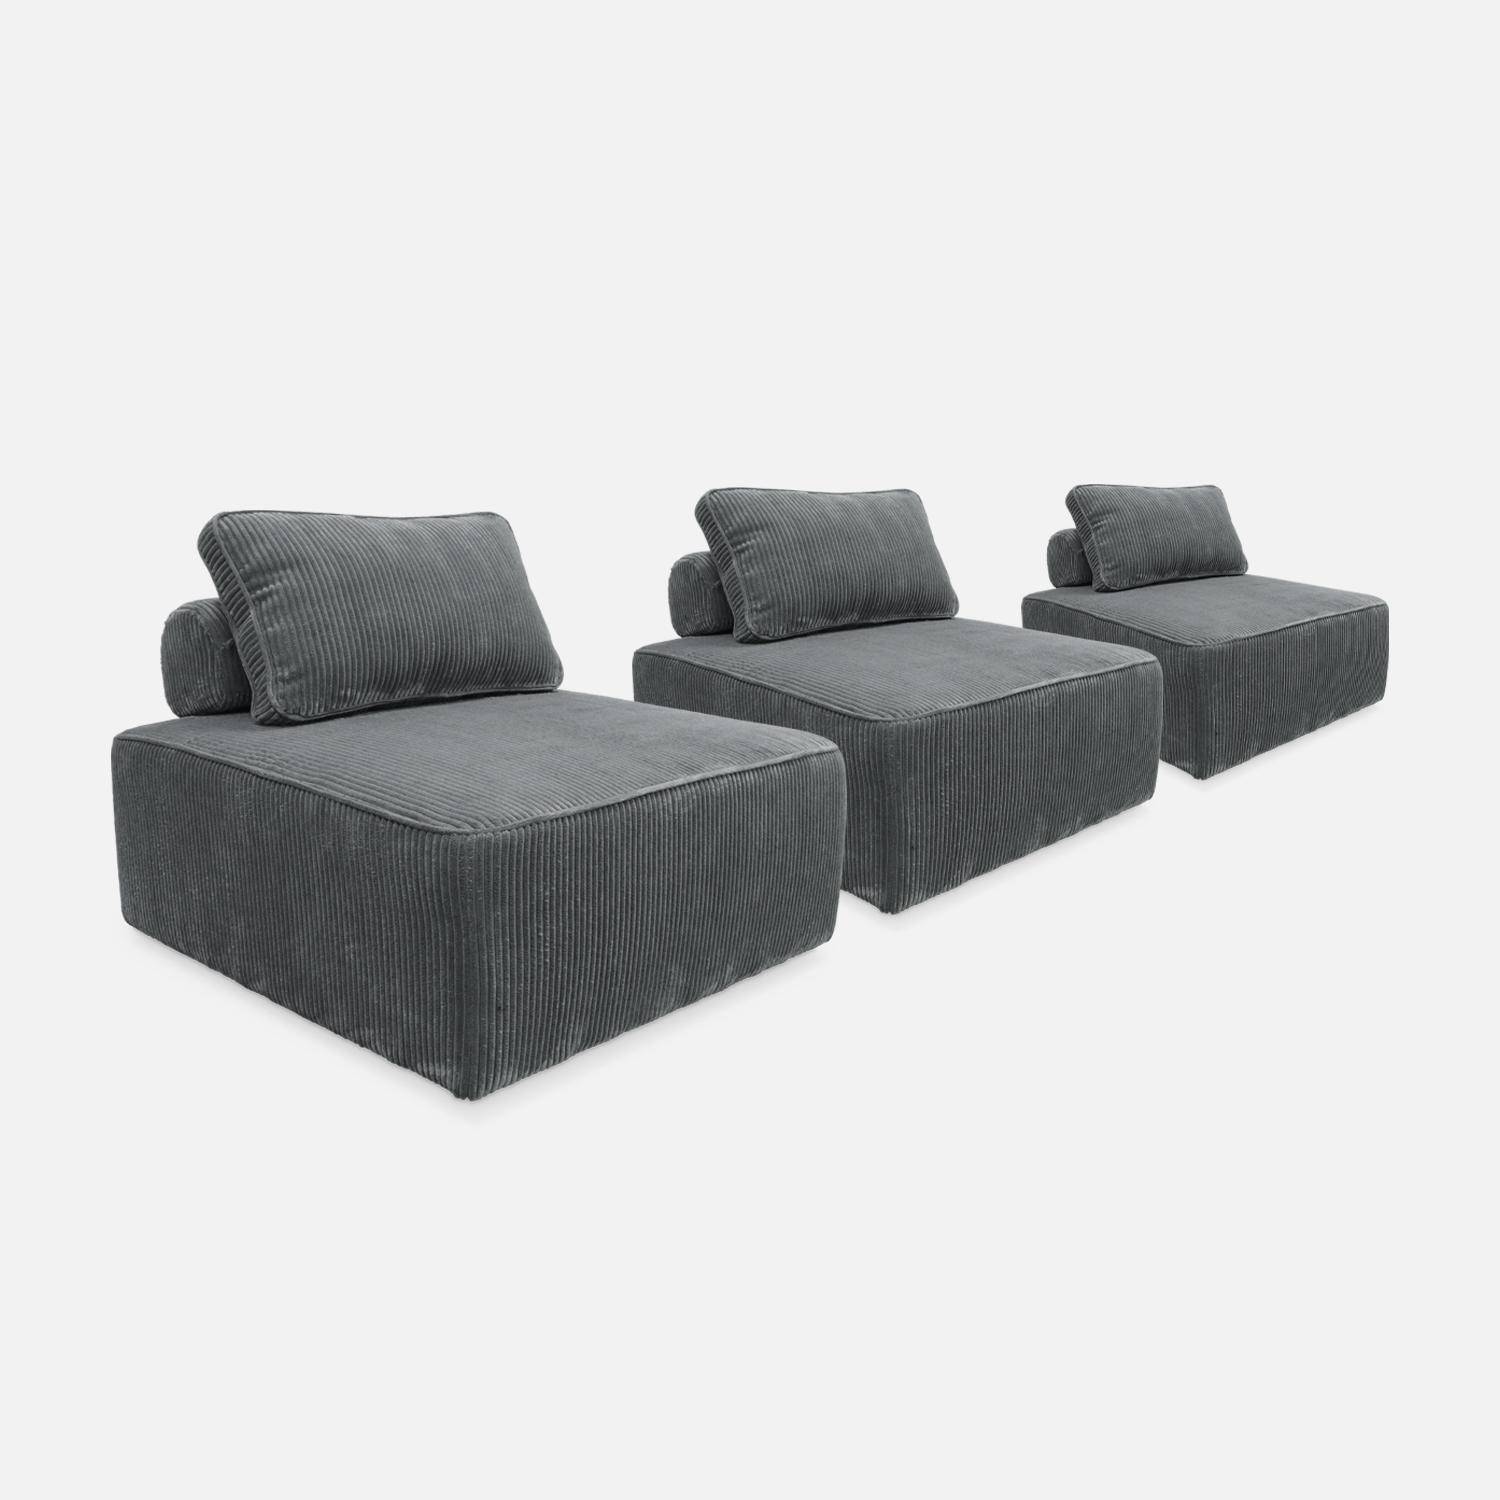 Set van 3 modulaire corduroy fauteuils in grijs met kussen,sweeek,Photo4